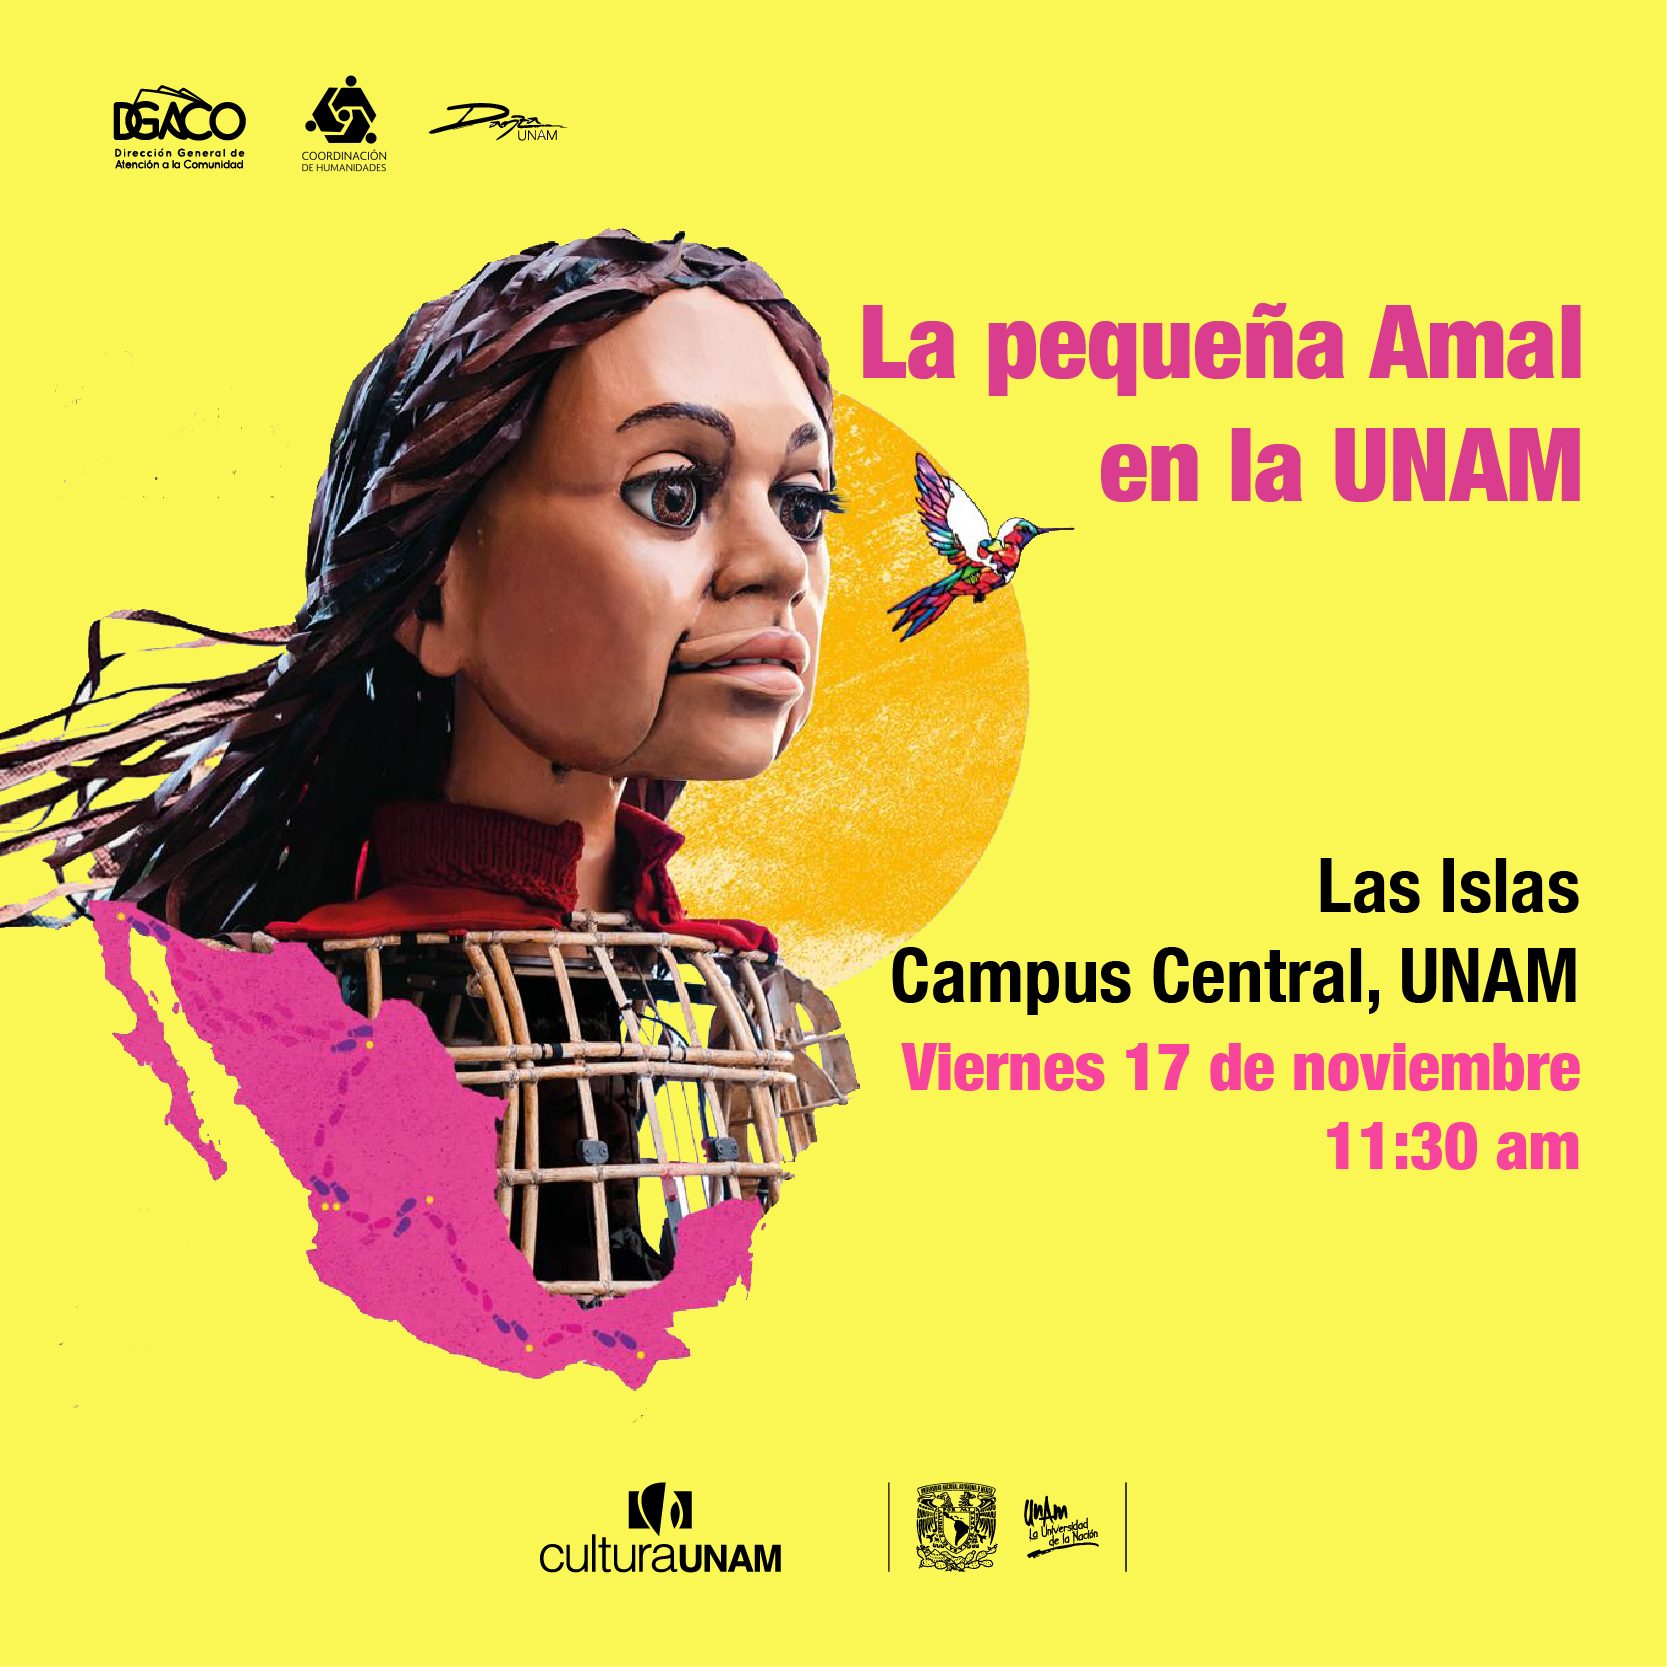 La pequeña Amal en la UNAM